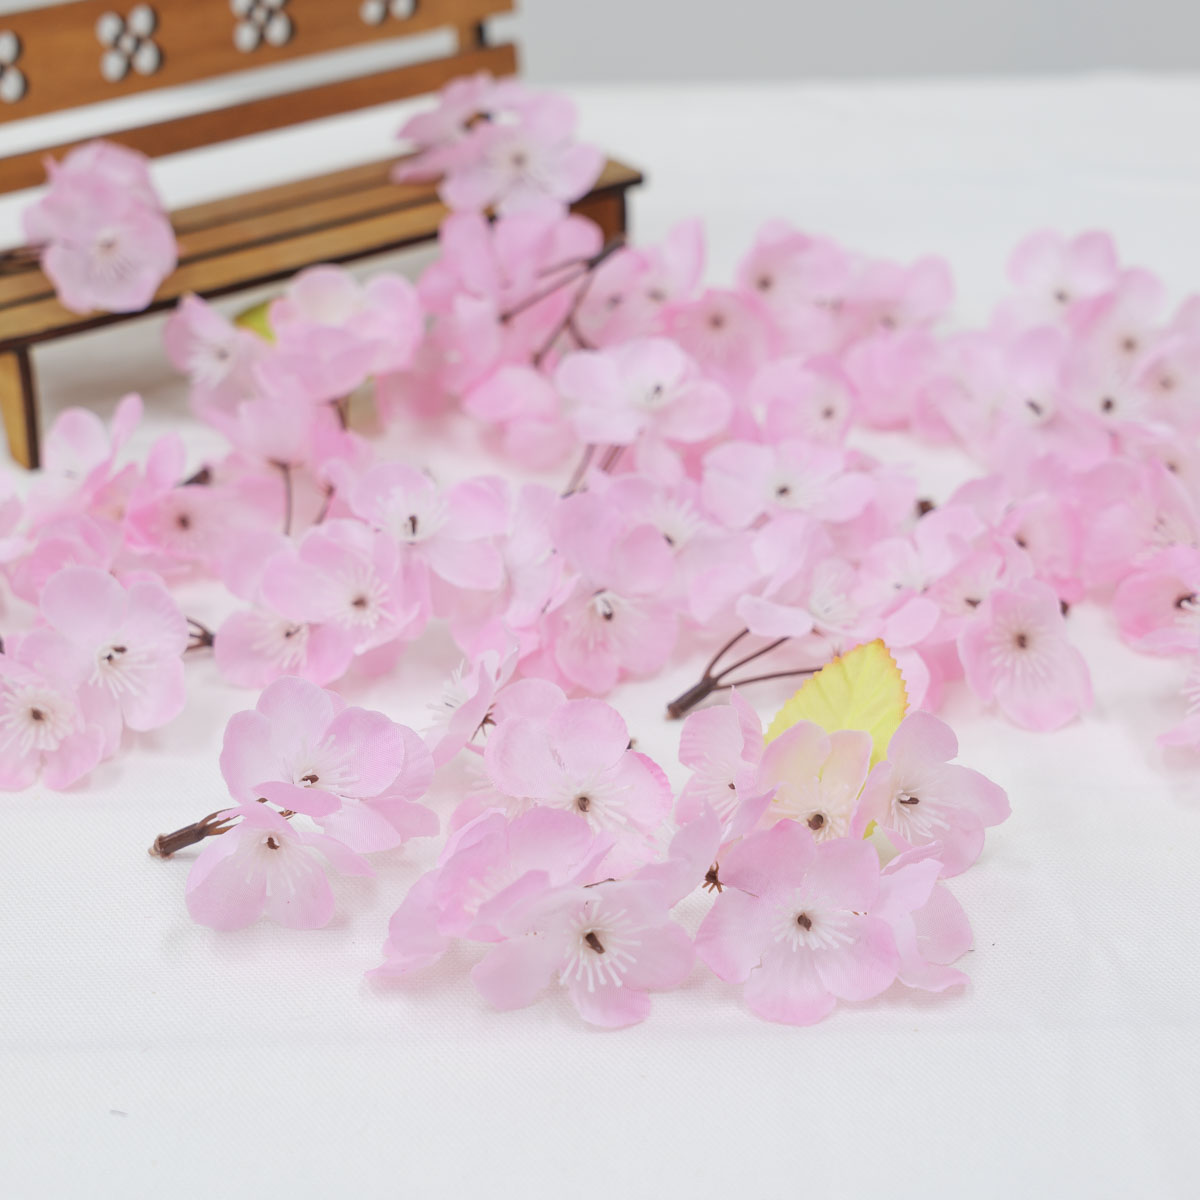 벚꽃조화 인조 벚꽃잎 꽃송이 300개(3송이짜리 100개) 1봉지 상품 다중이미지 썸네일